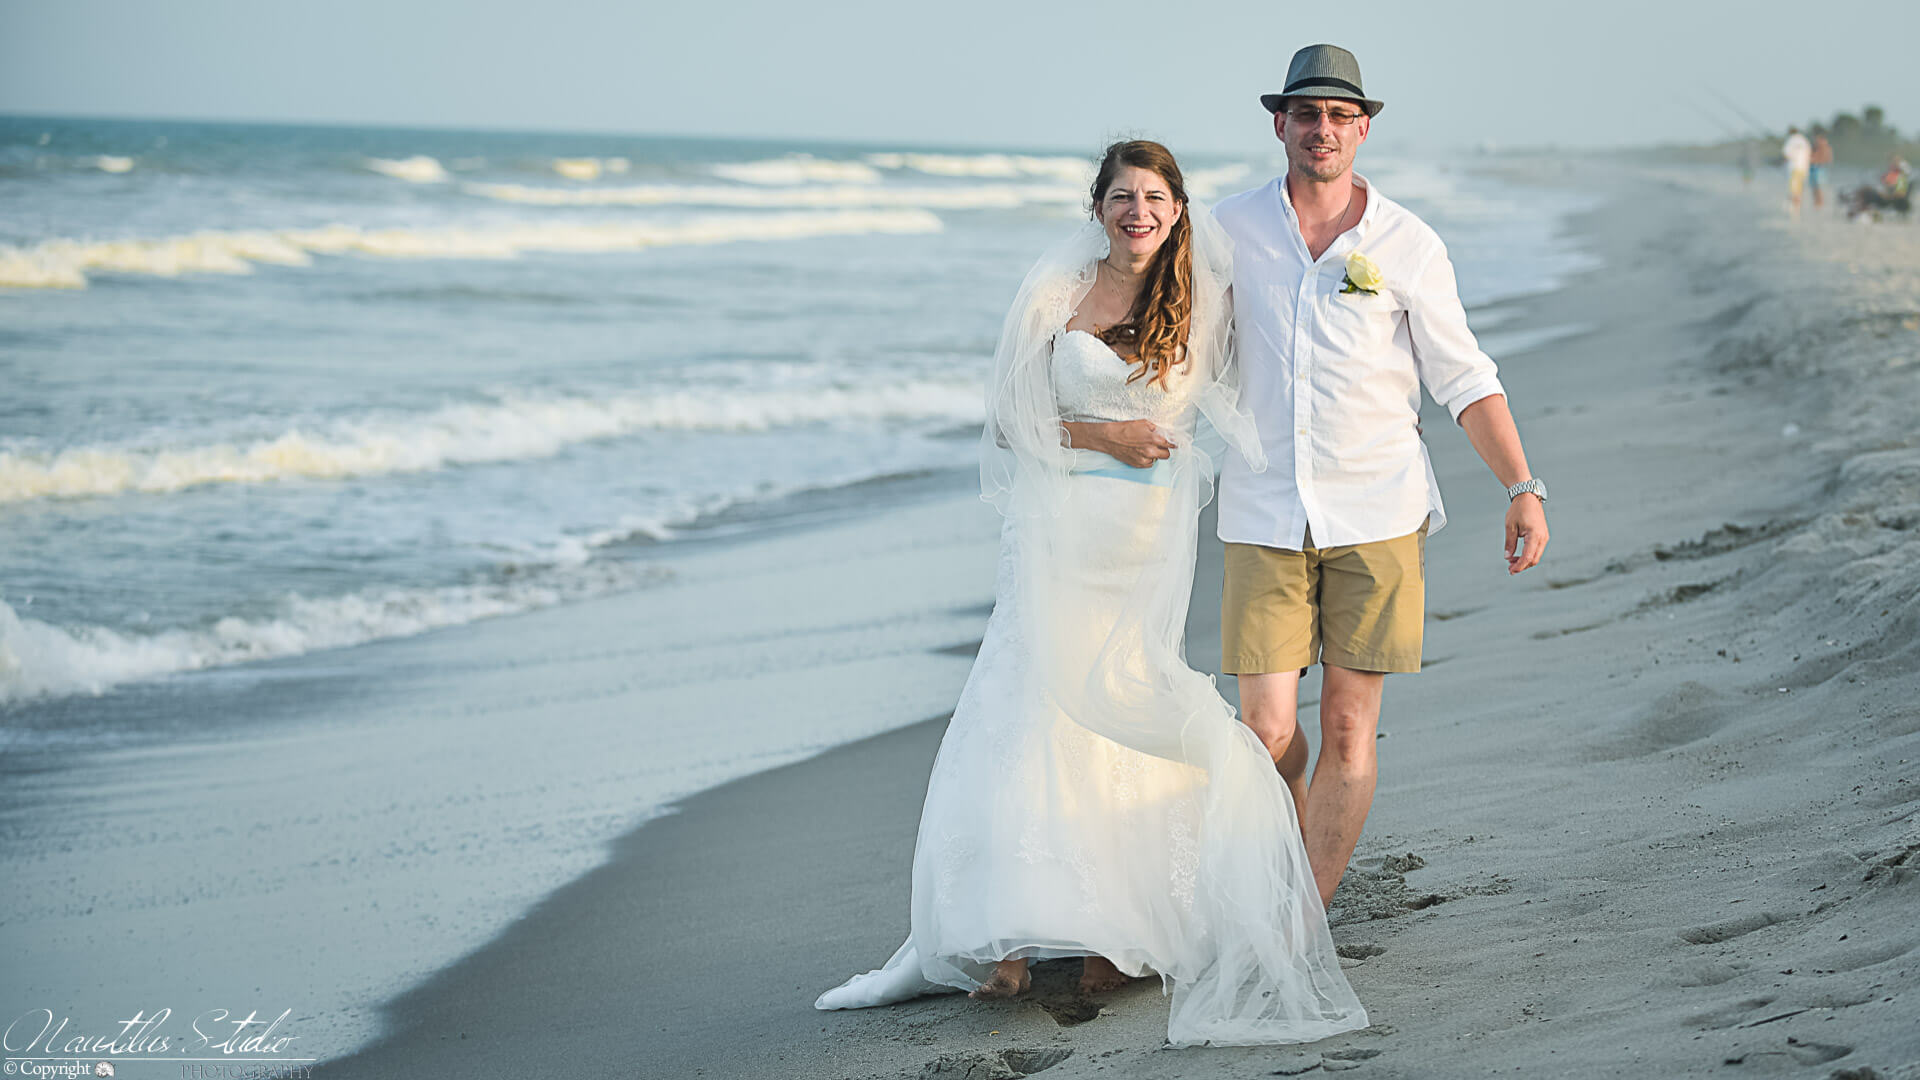 Erneuerung des Eheversprechens, Bild von Paar am Strand Florida, Cocoa Beach